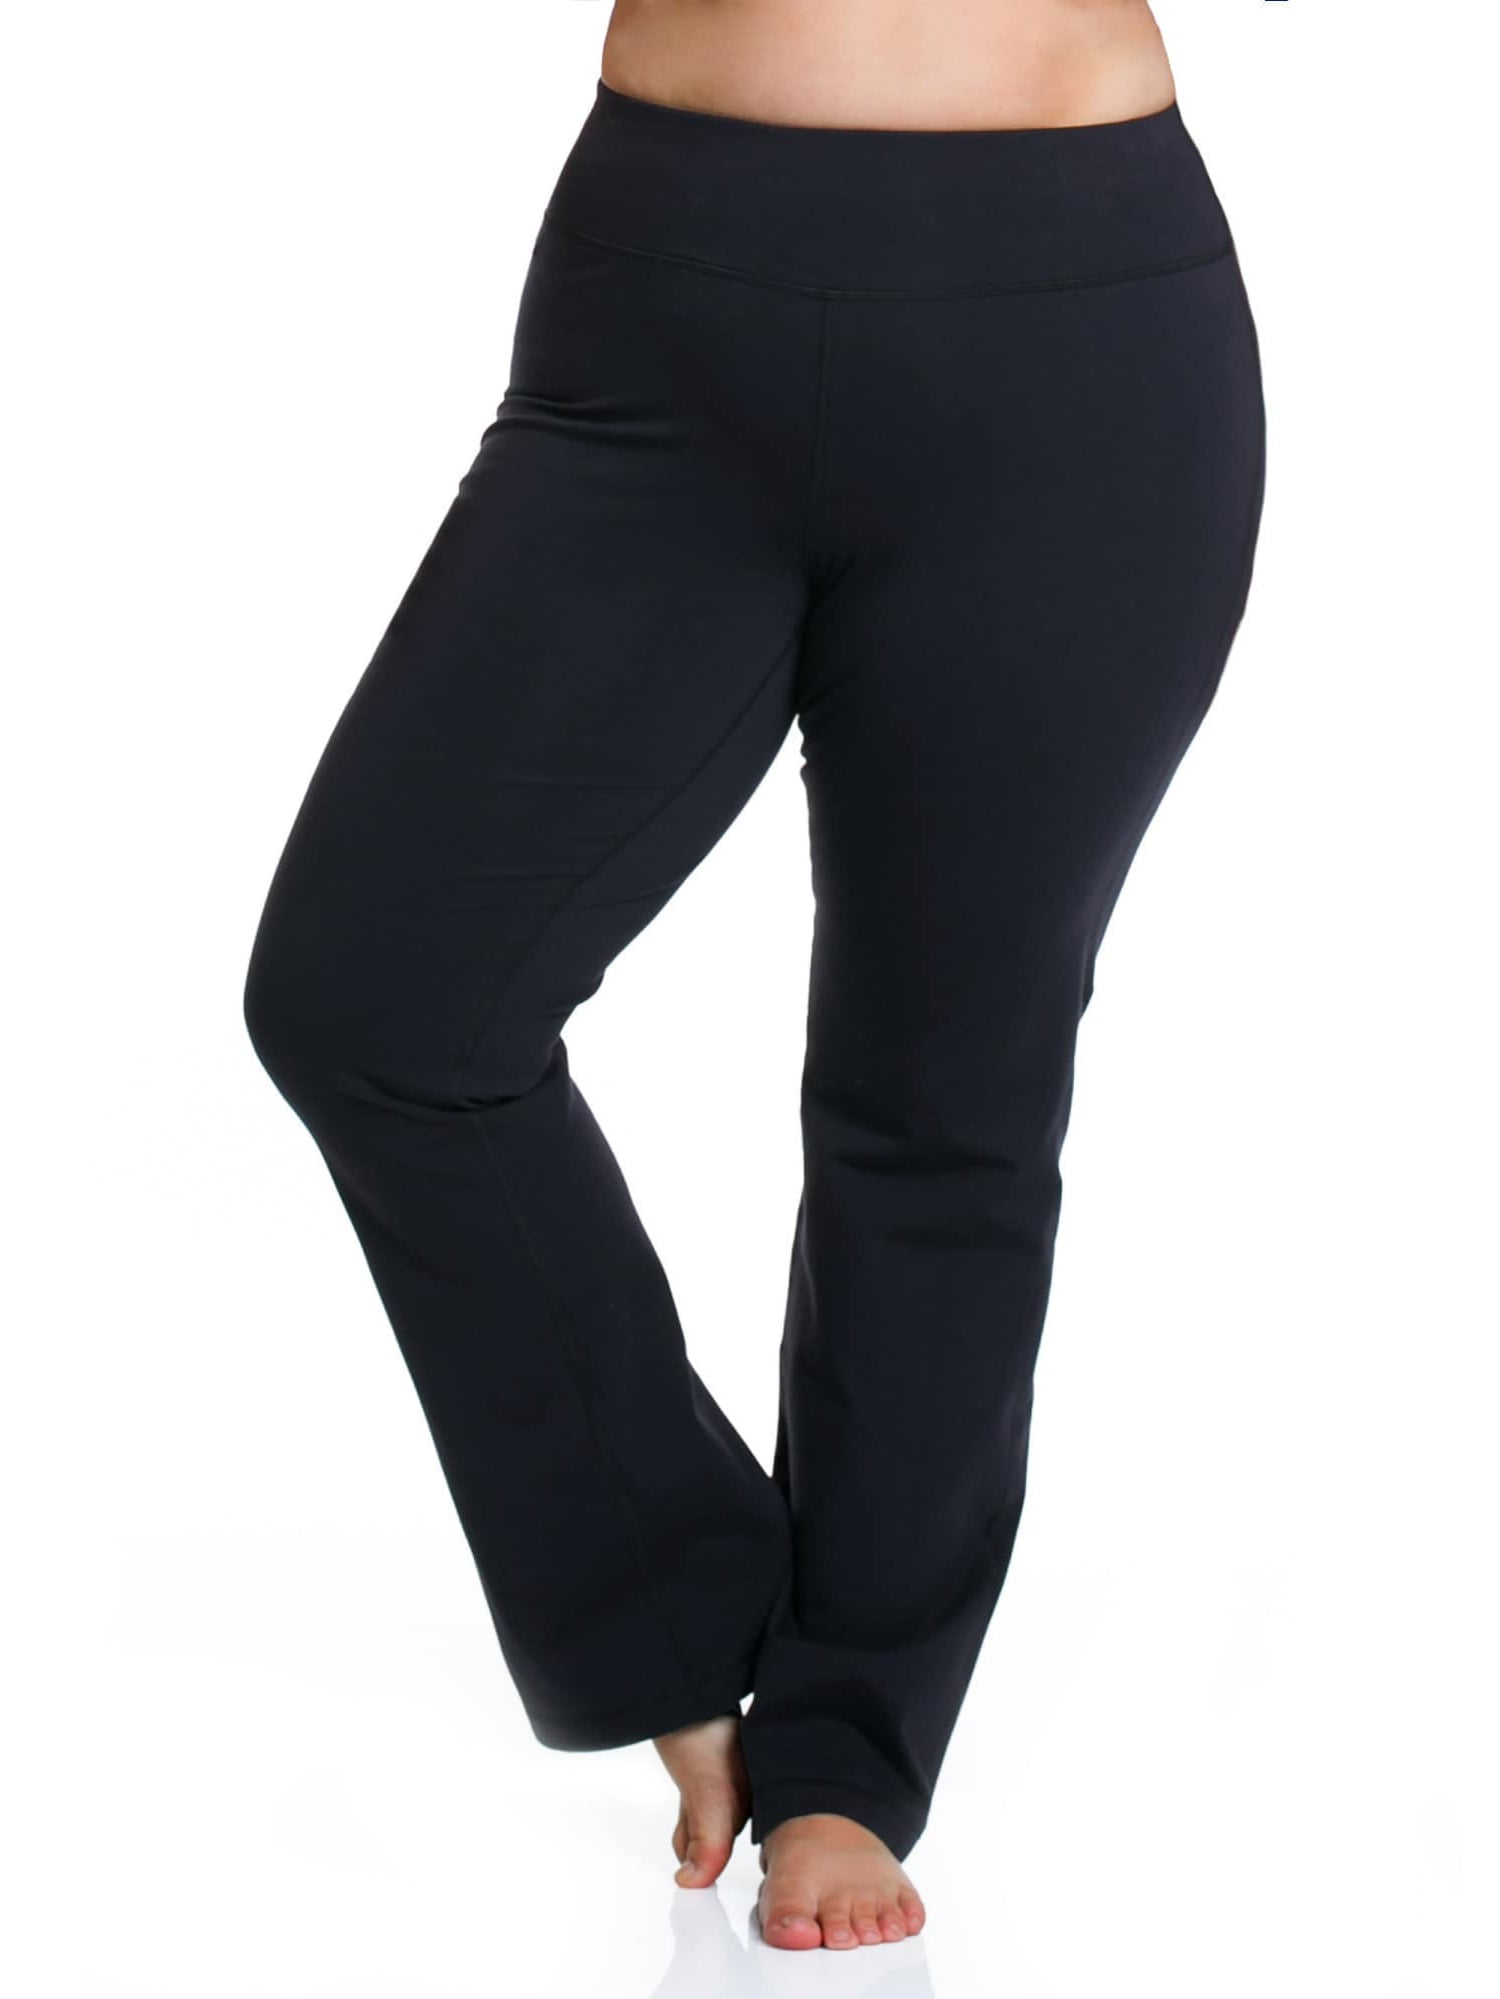 Rainbeau Curves Curve Basix Women's Black Cotton/Spandex Pants ...